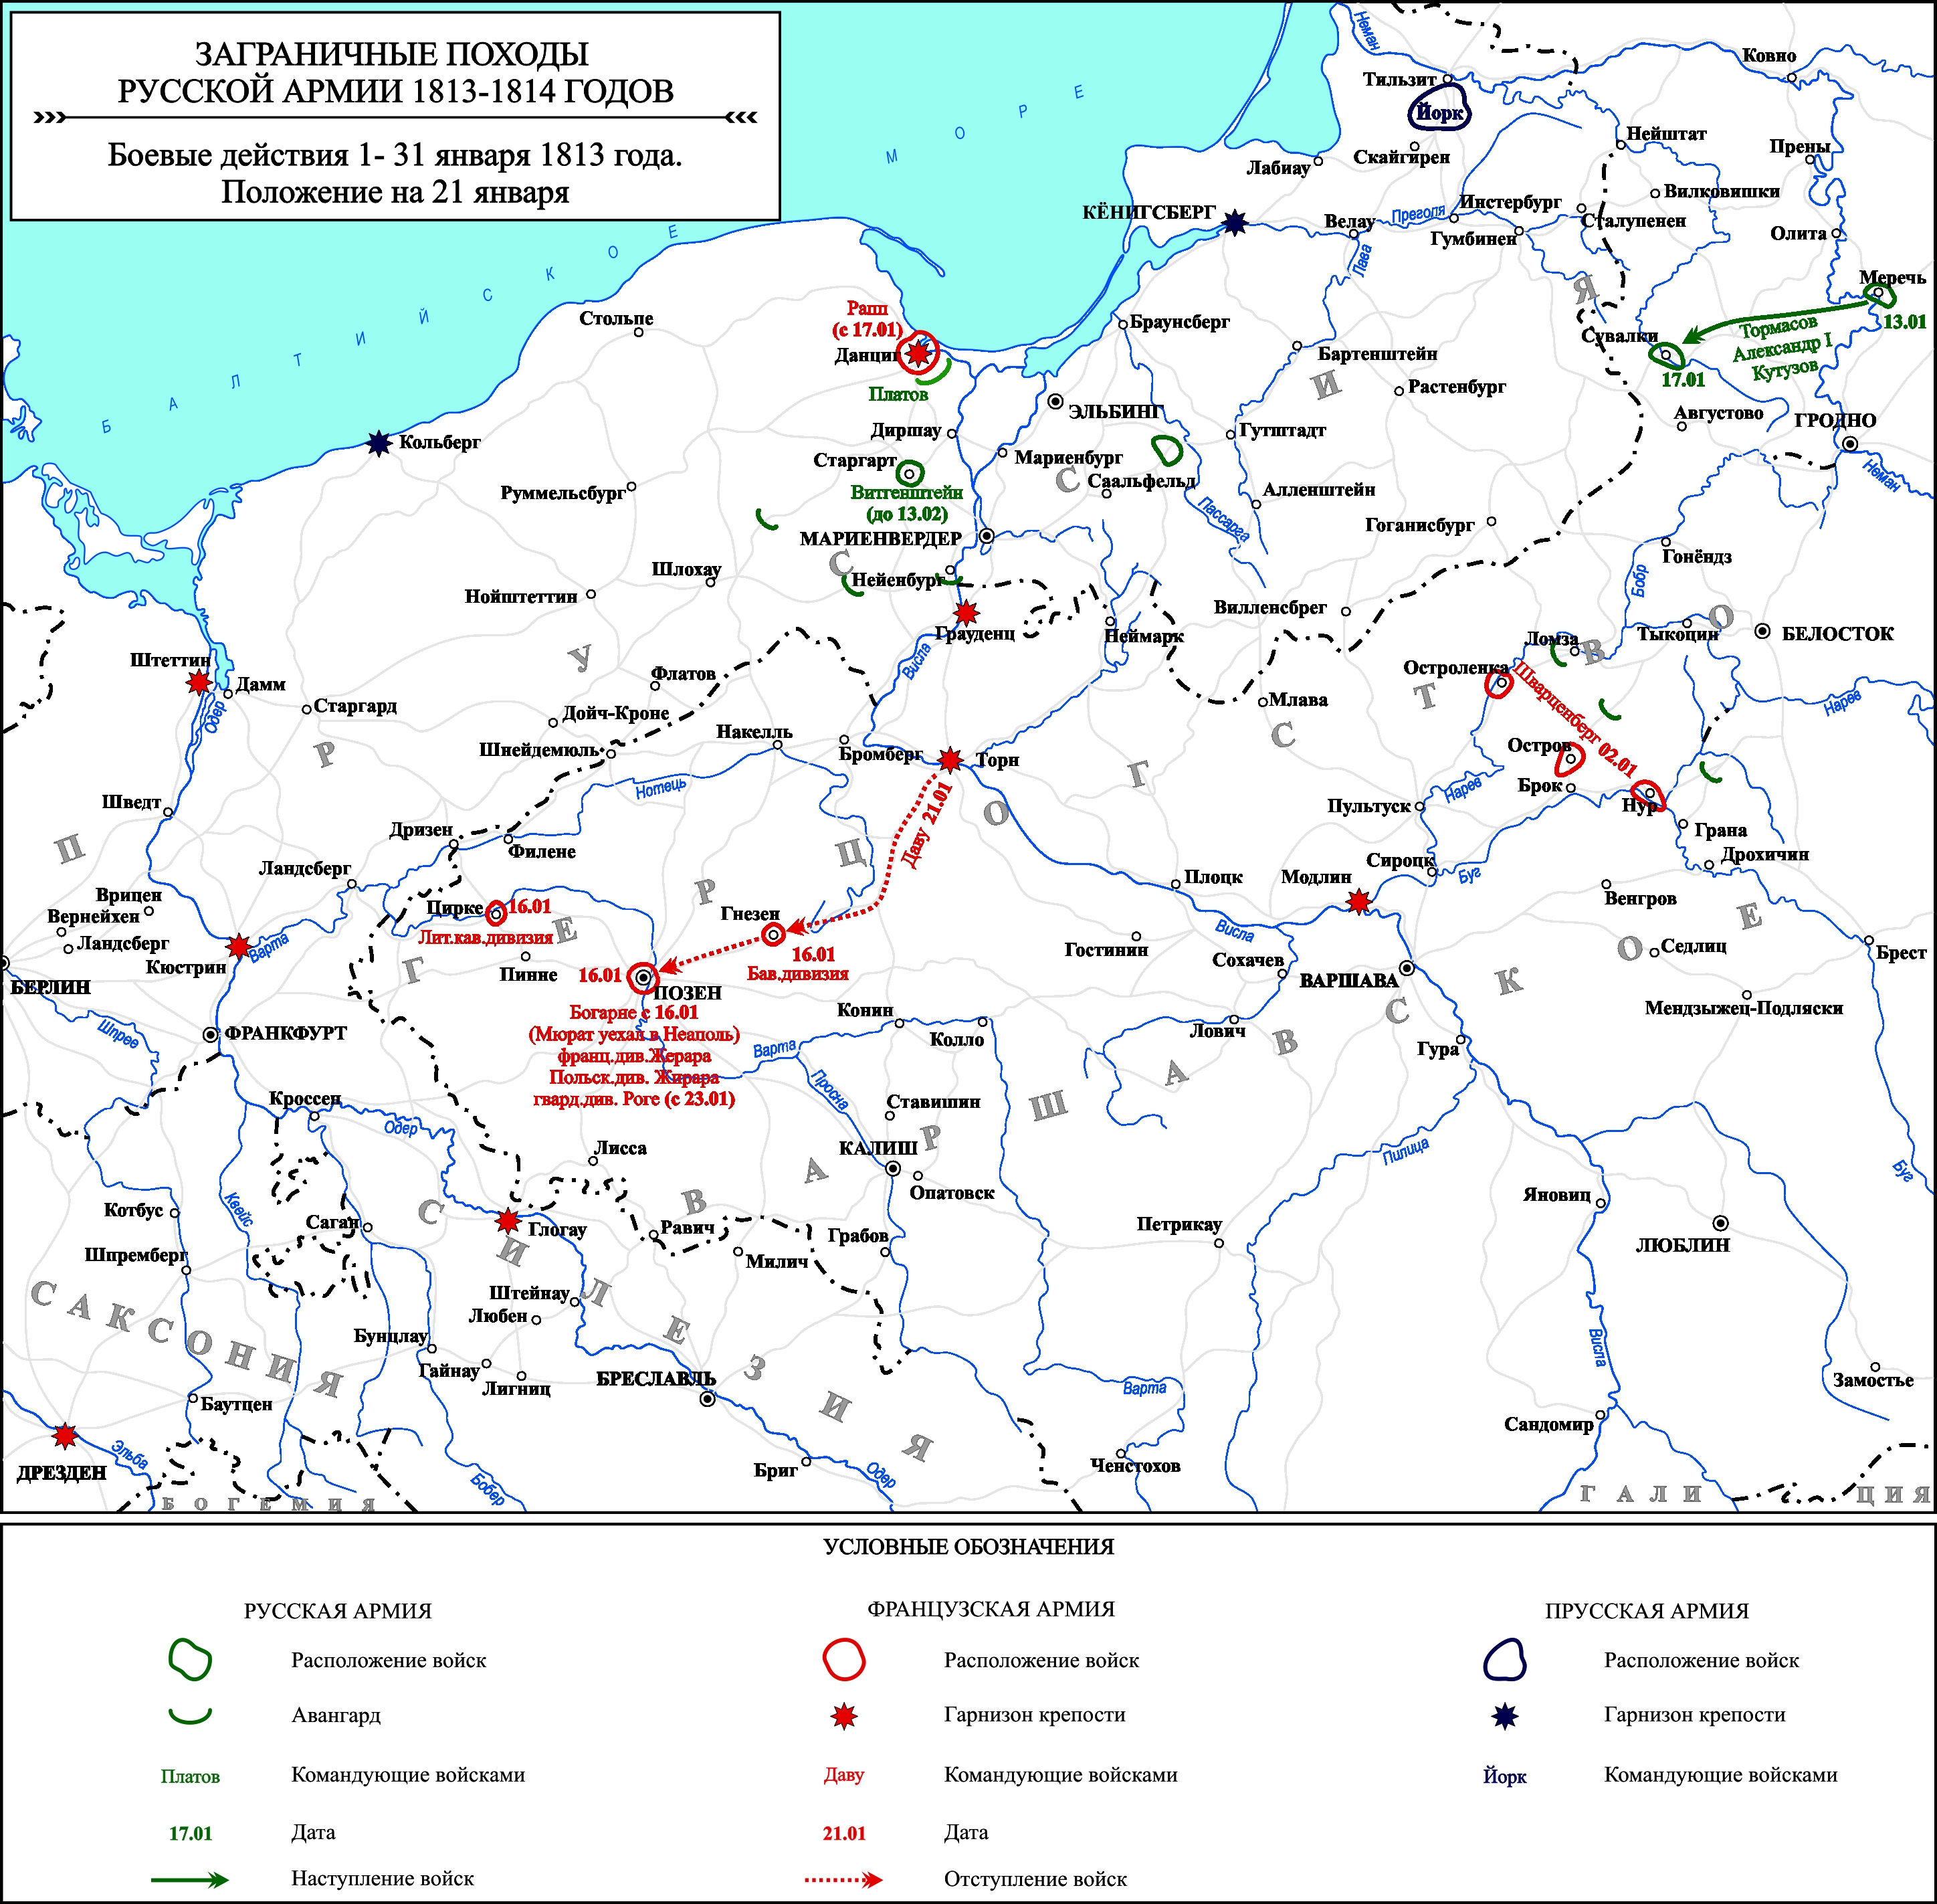 Заграничные походы Русской армии 1813-1814 гг. Положение на 21 января 1813 г.